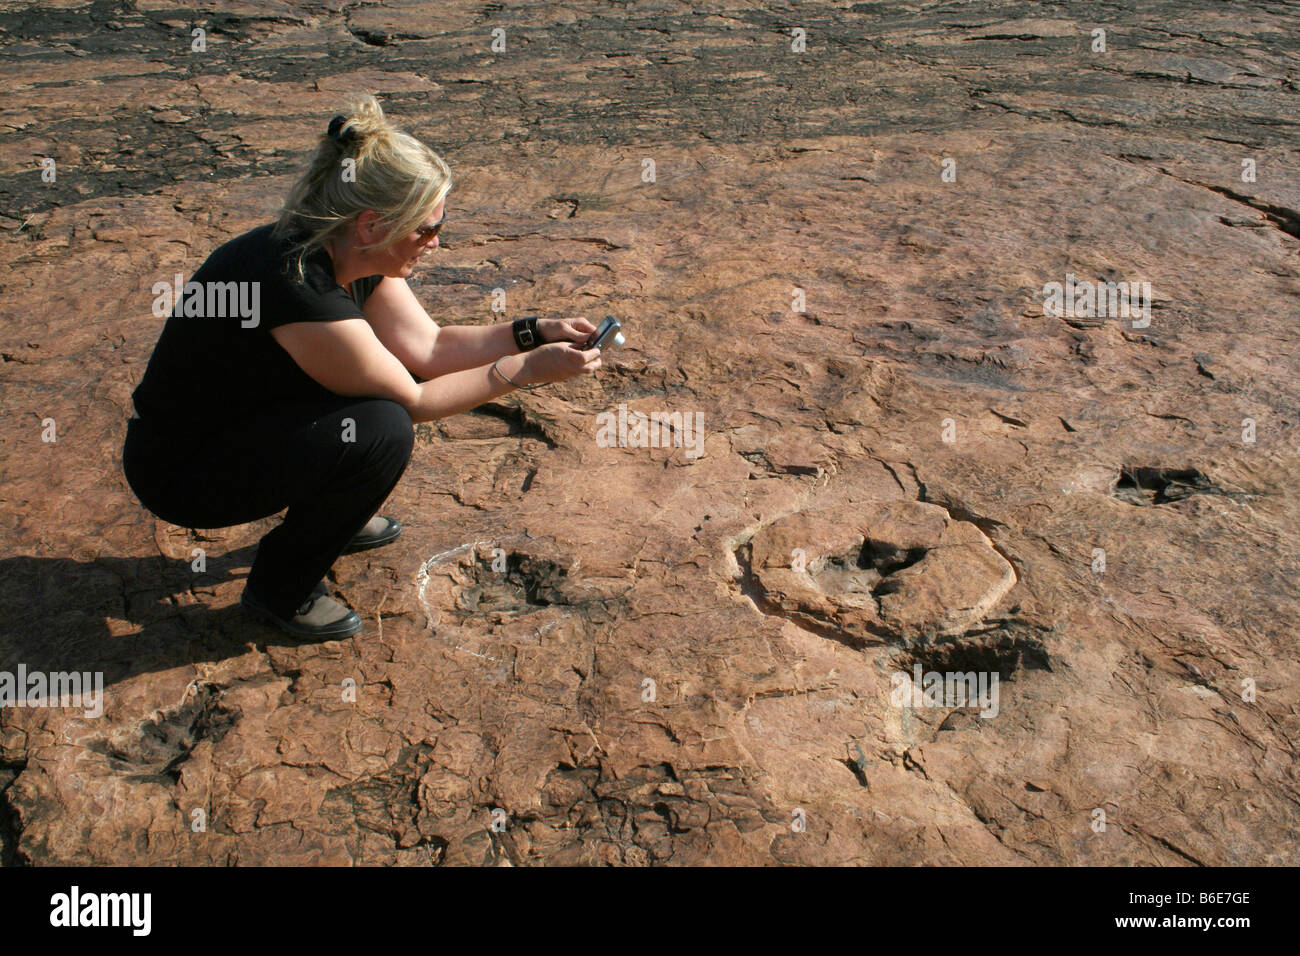 Tourst near dinosaur footprints Stock Photo